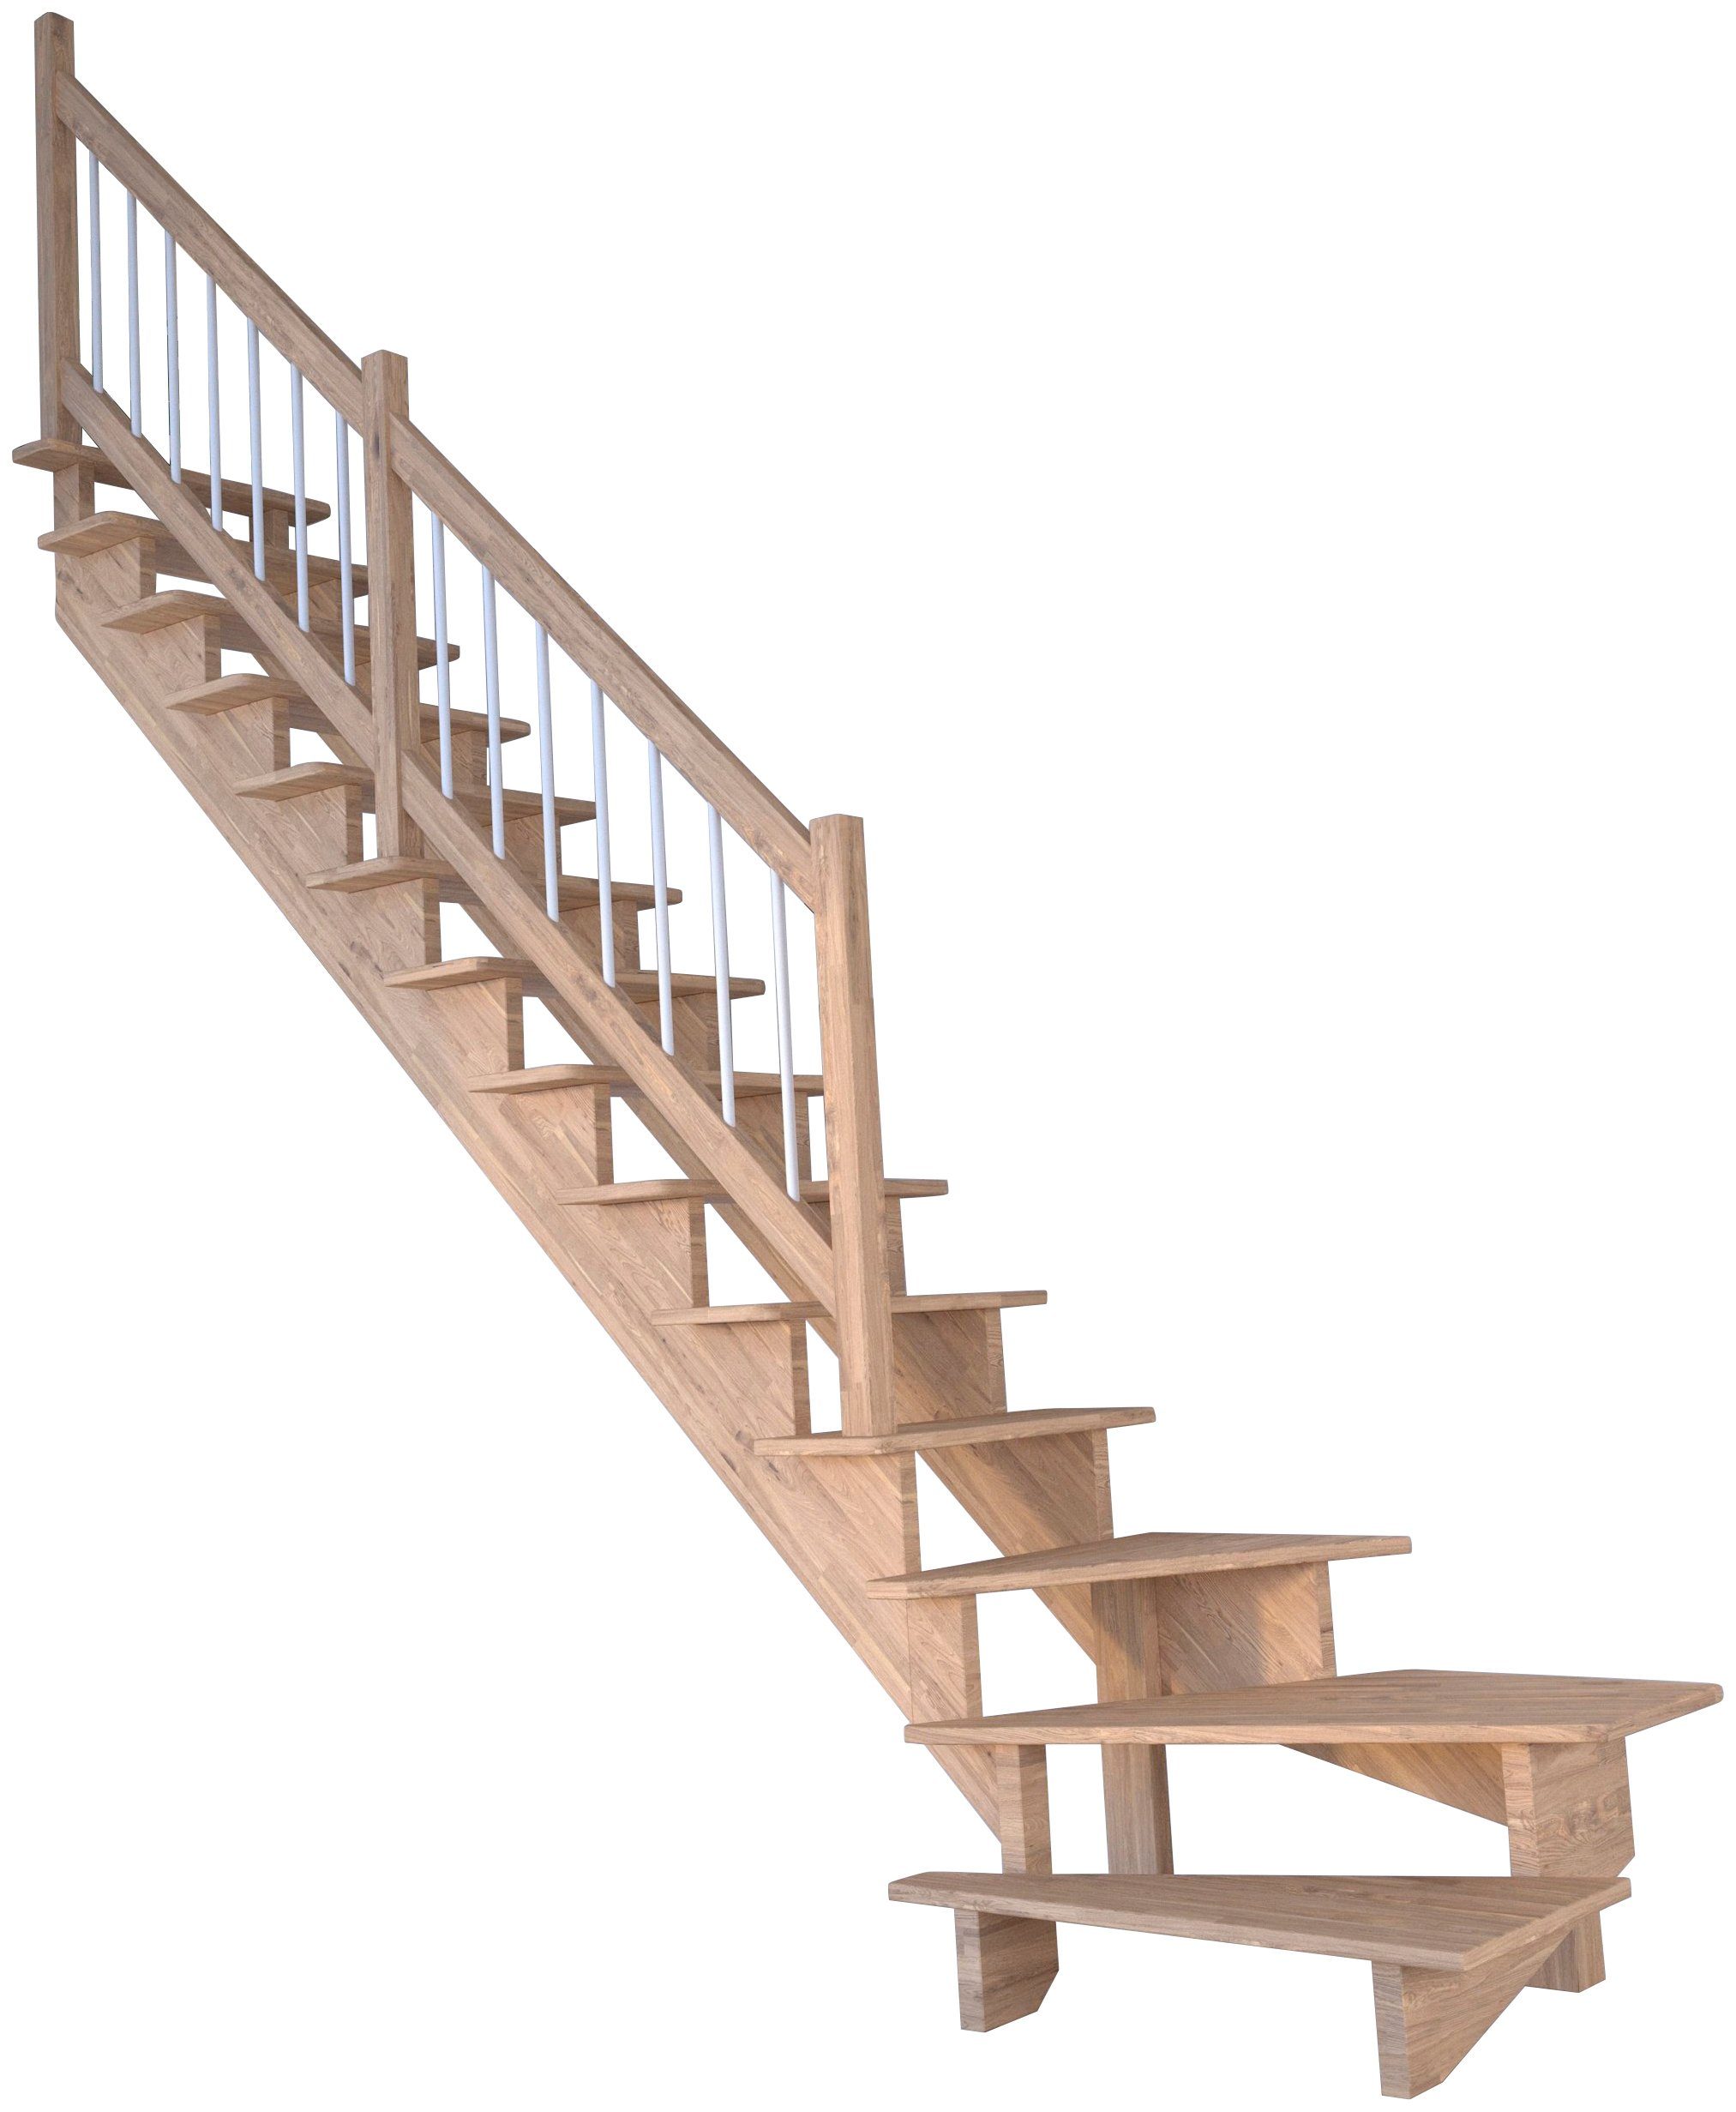 Starwood Systemtreppe Massivholz Lindos, Holz-Edelstahl Weiß, für Geschosshöhen bis 300 cm, Stufen offen, gewendelt Links, Durchgehende Wangenteile